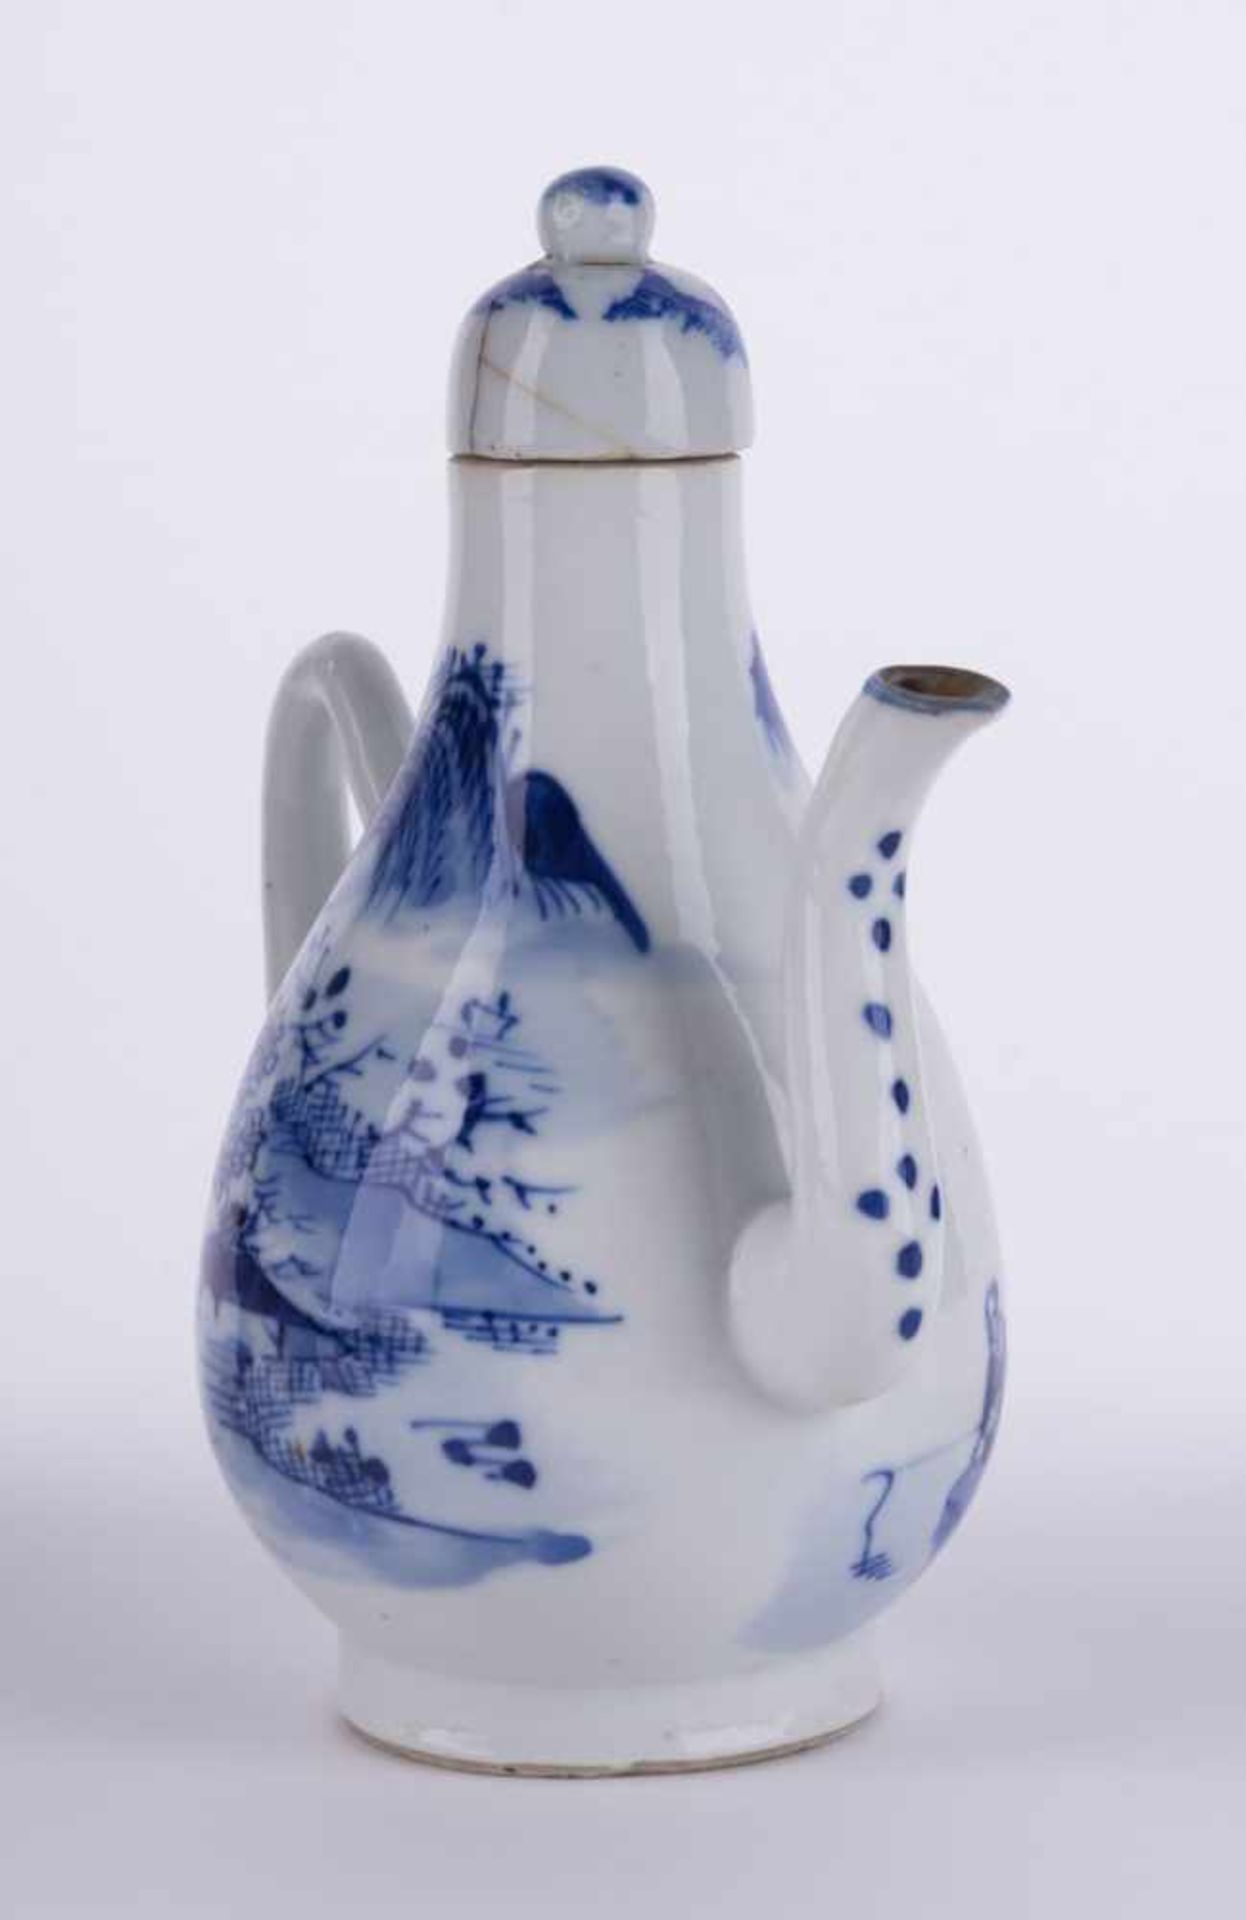 Kanne China 19. Jhd. / Pot, China 19th century blau weiß Malerei, unterm Stand alte Sammlungsnummer, - Image 3 of 5